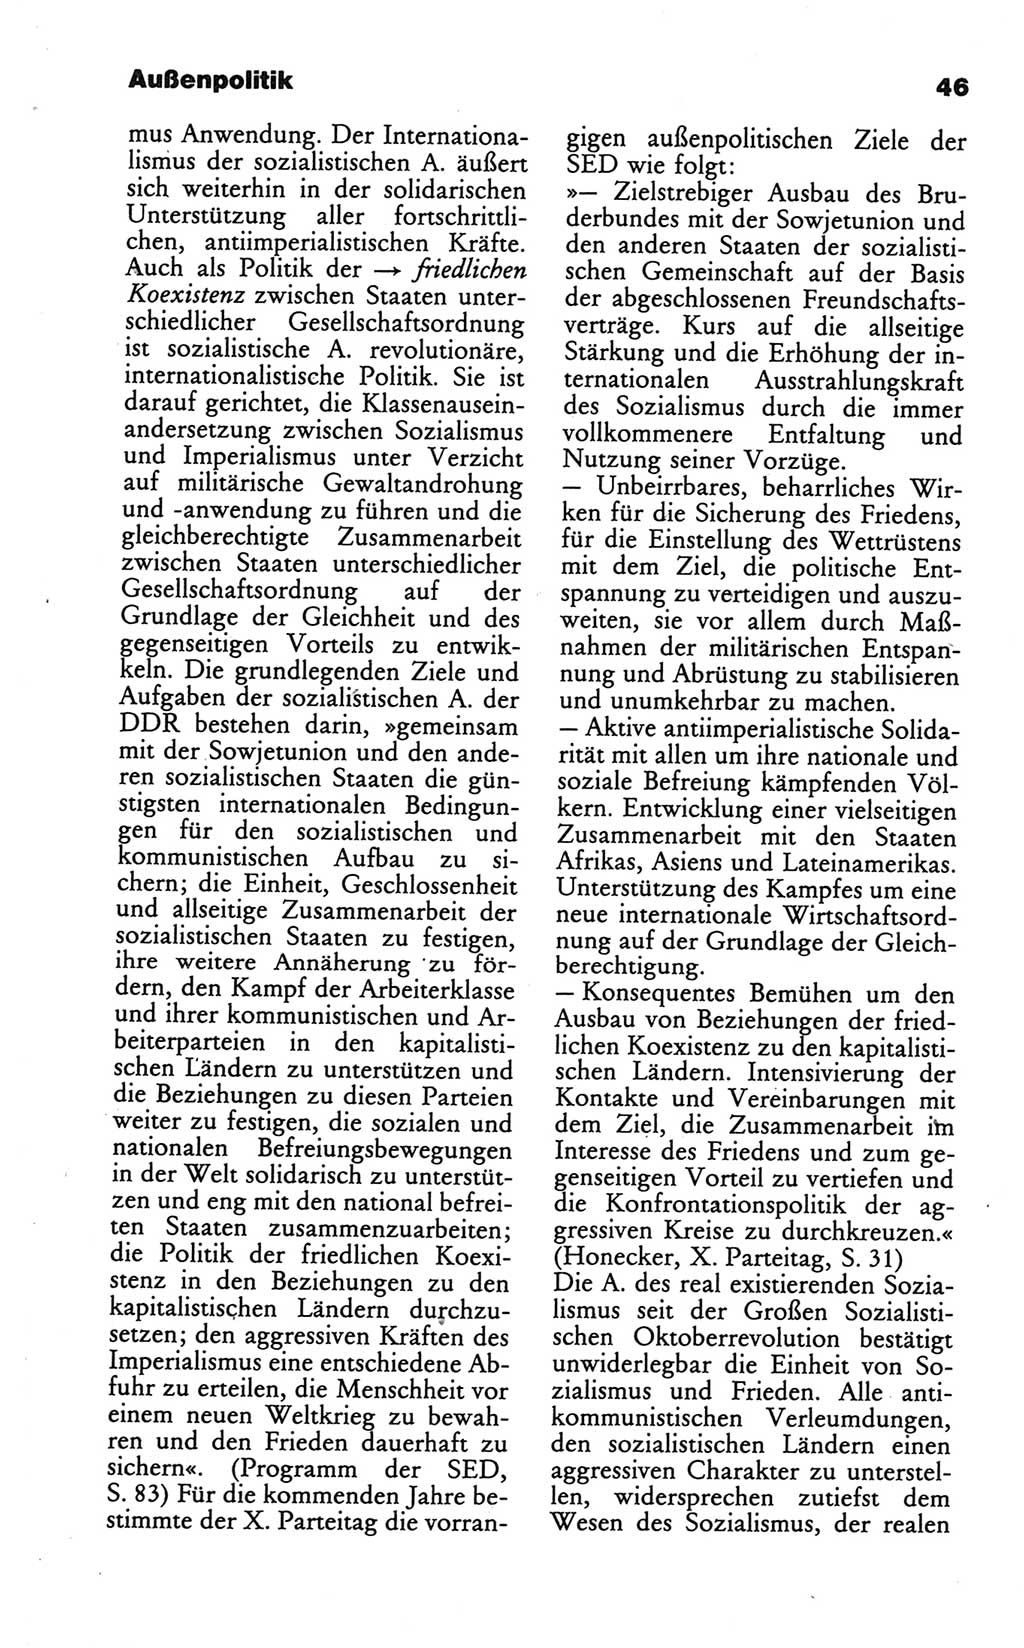 Wörterbuch des wissenschaftlichen Kommunismus [Deutsche Demokratische Republik (DDR)] 1986, Seite 46 (Wb. wiss. Komm. DDR 1986, S. 46)